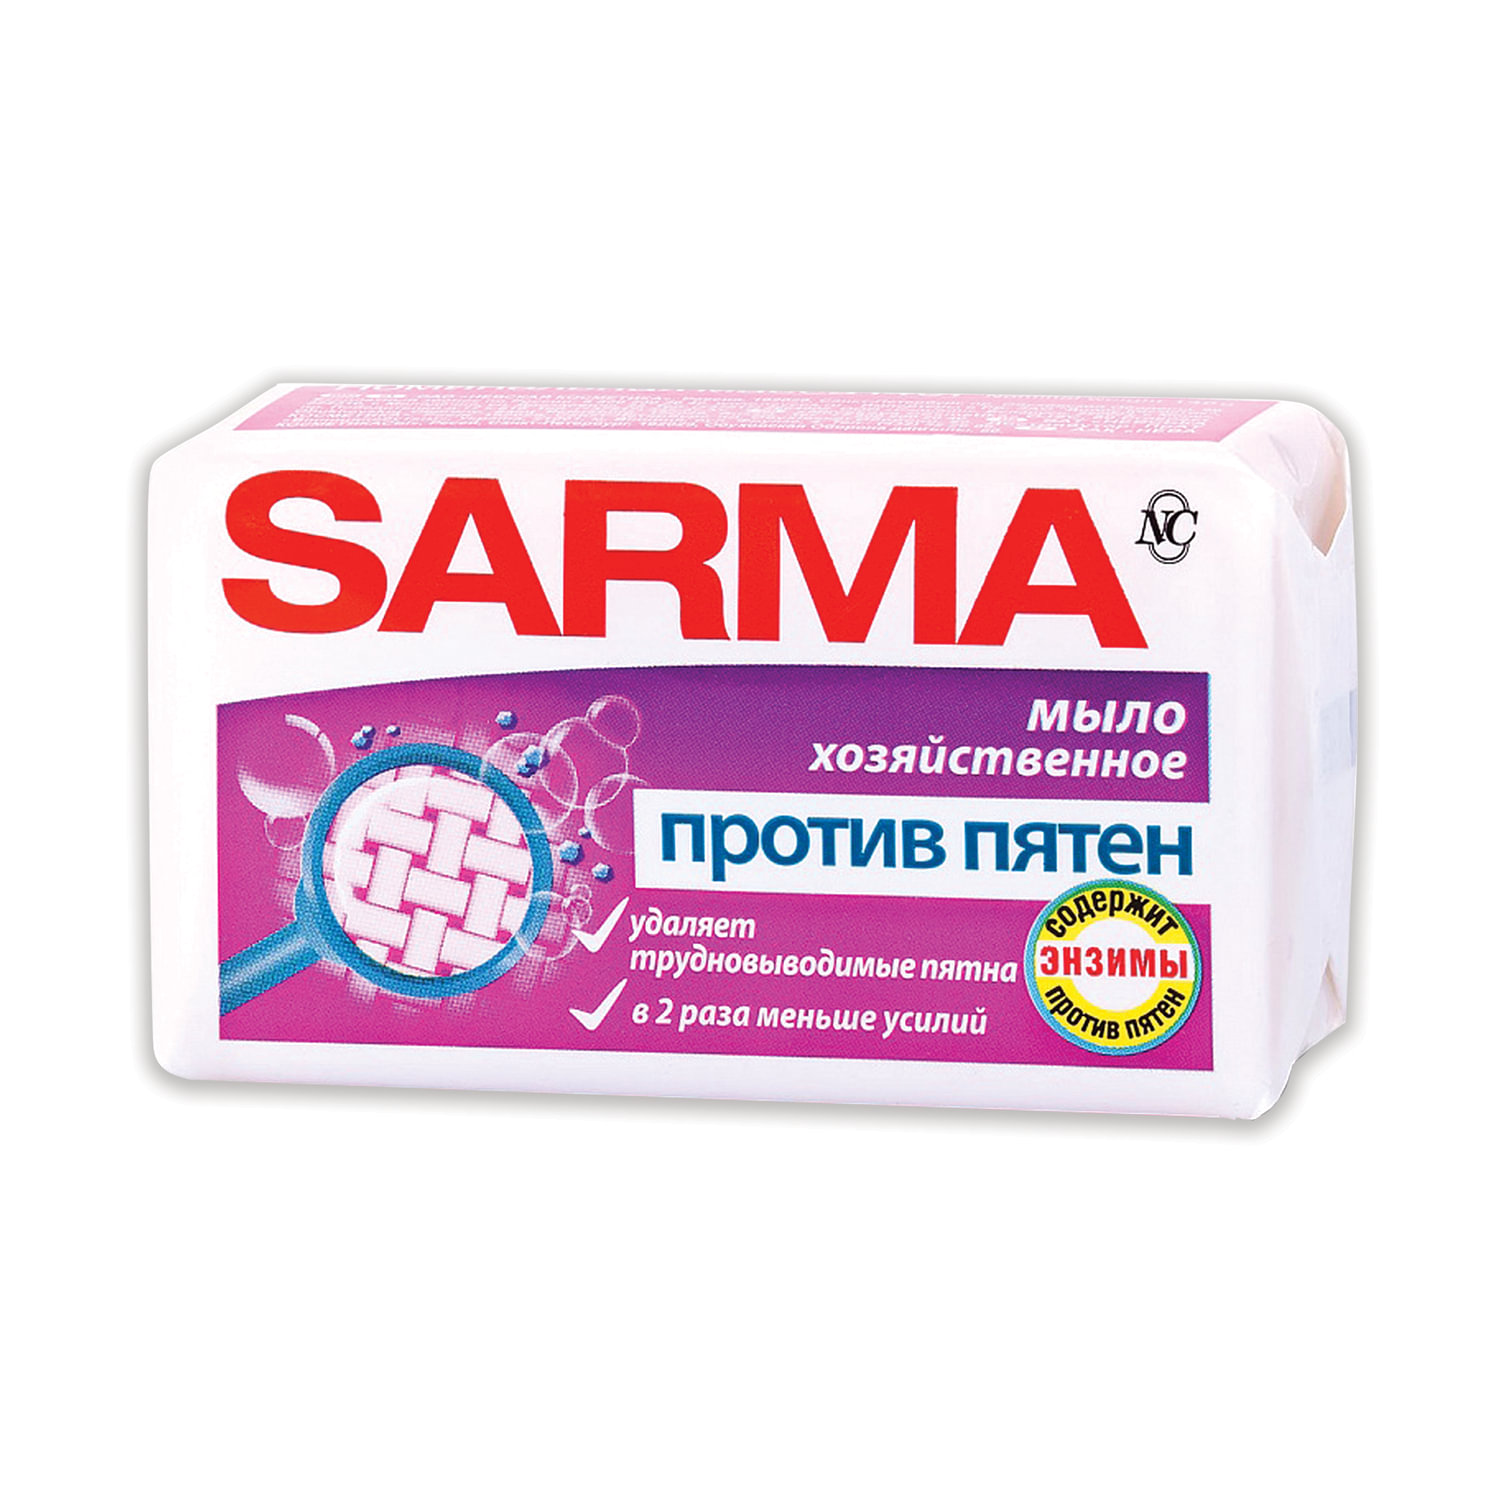  SARMA 11150,  16 .